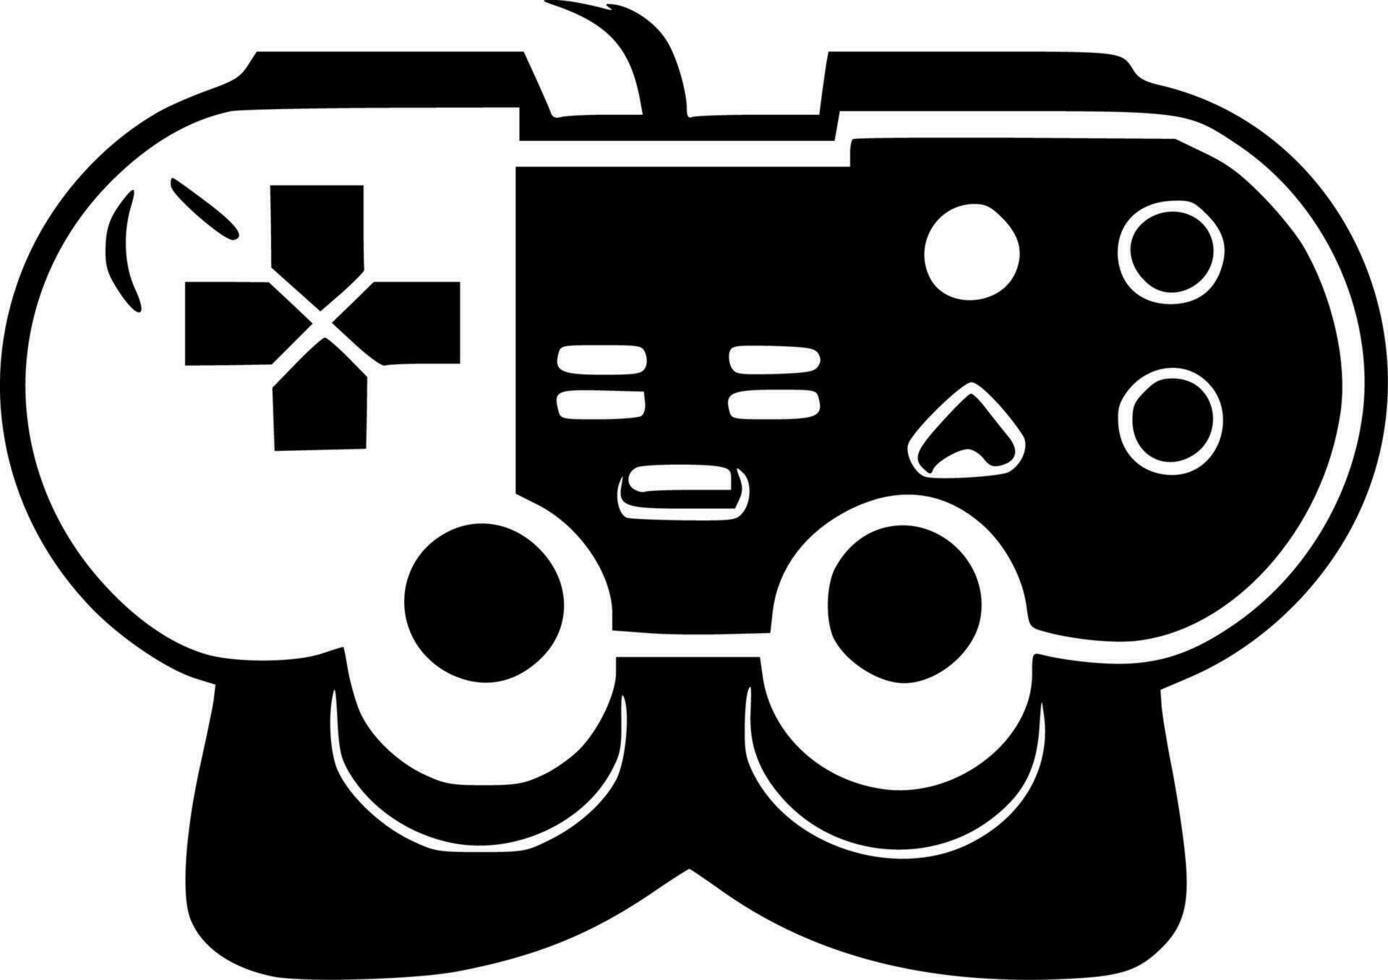 gamer - svart och vit isolerat ikon - vektor illustration